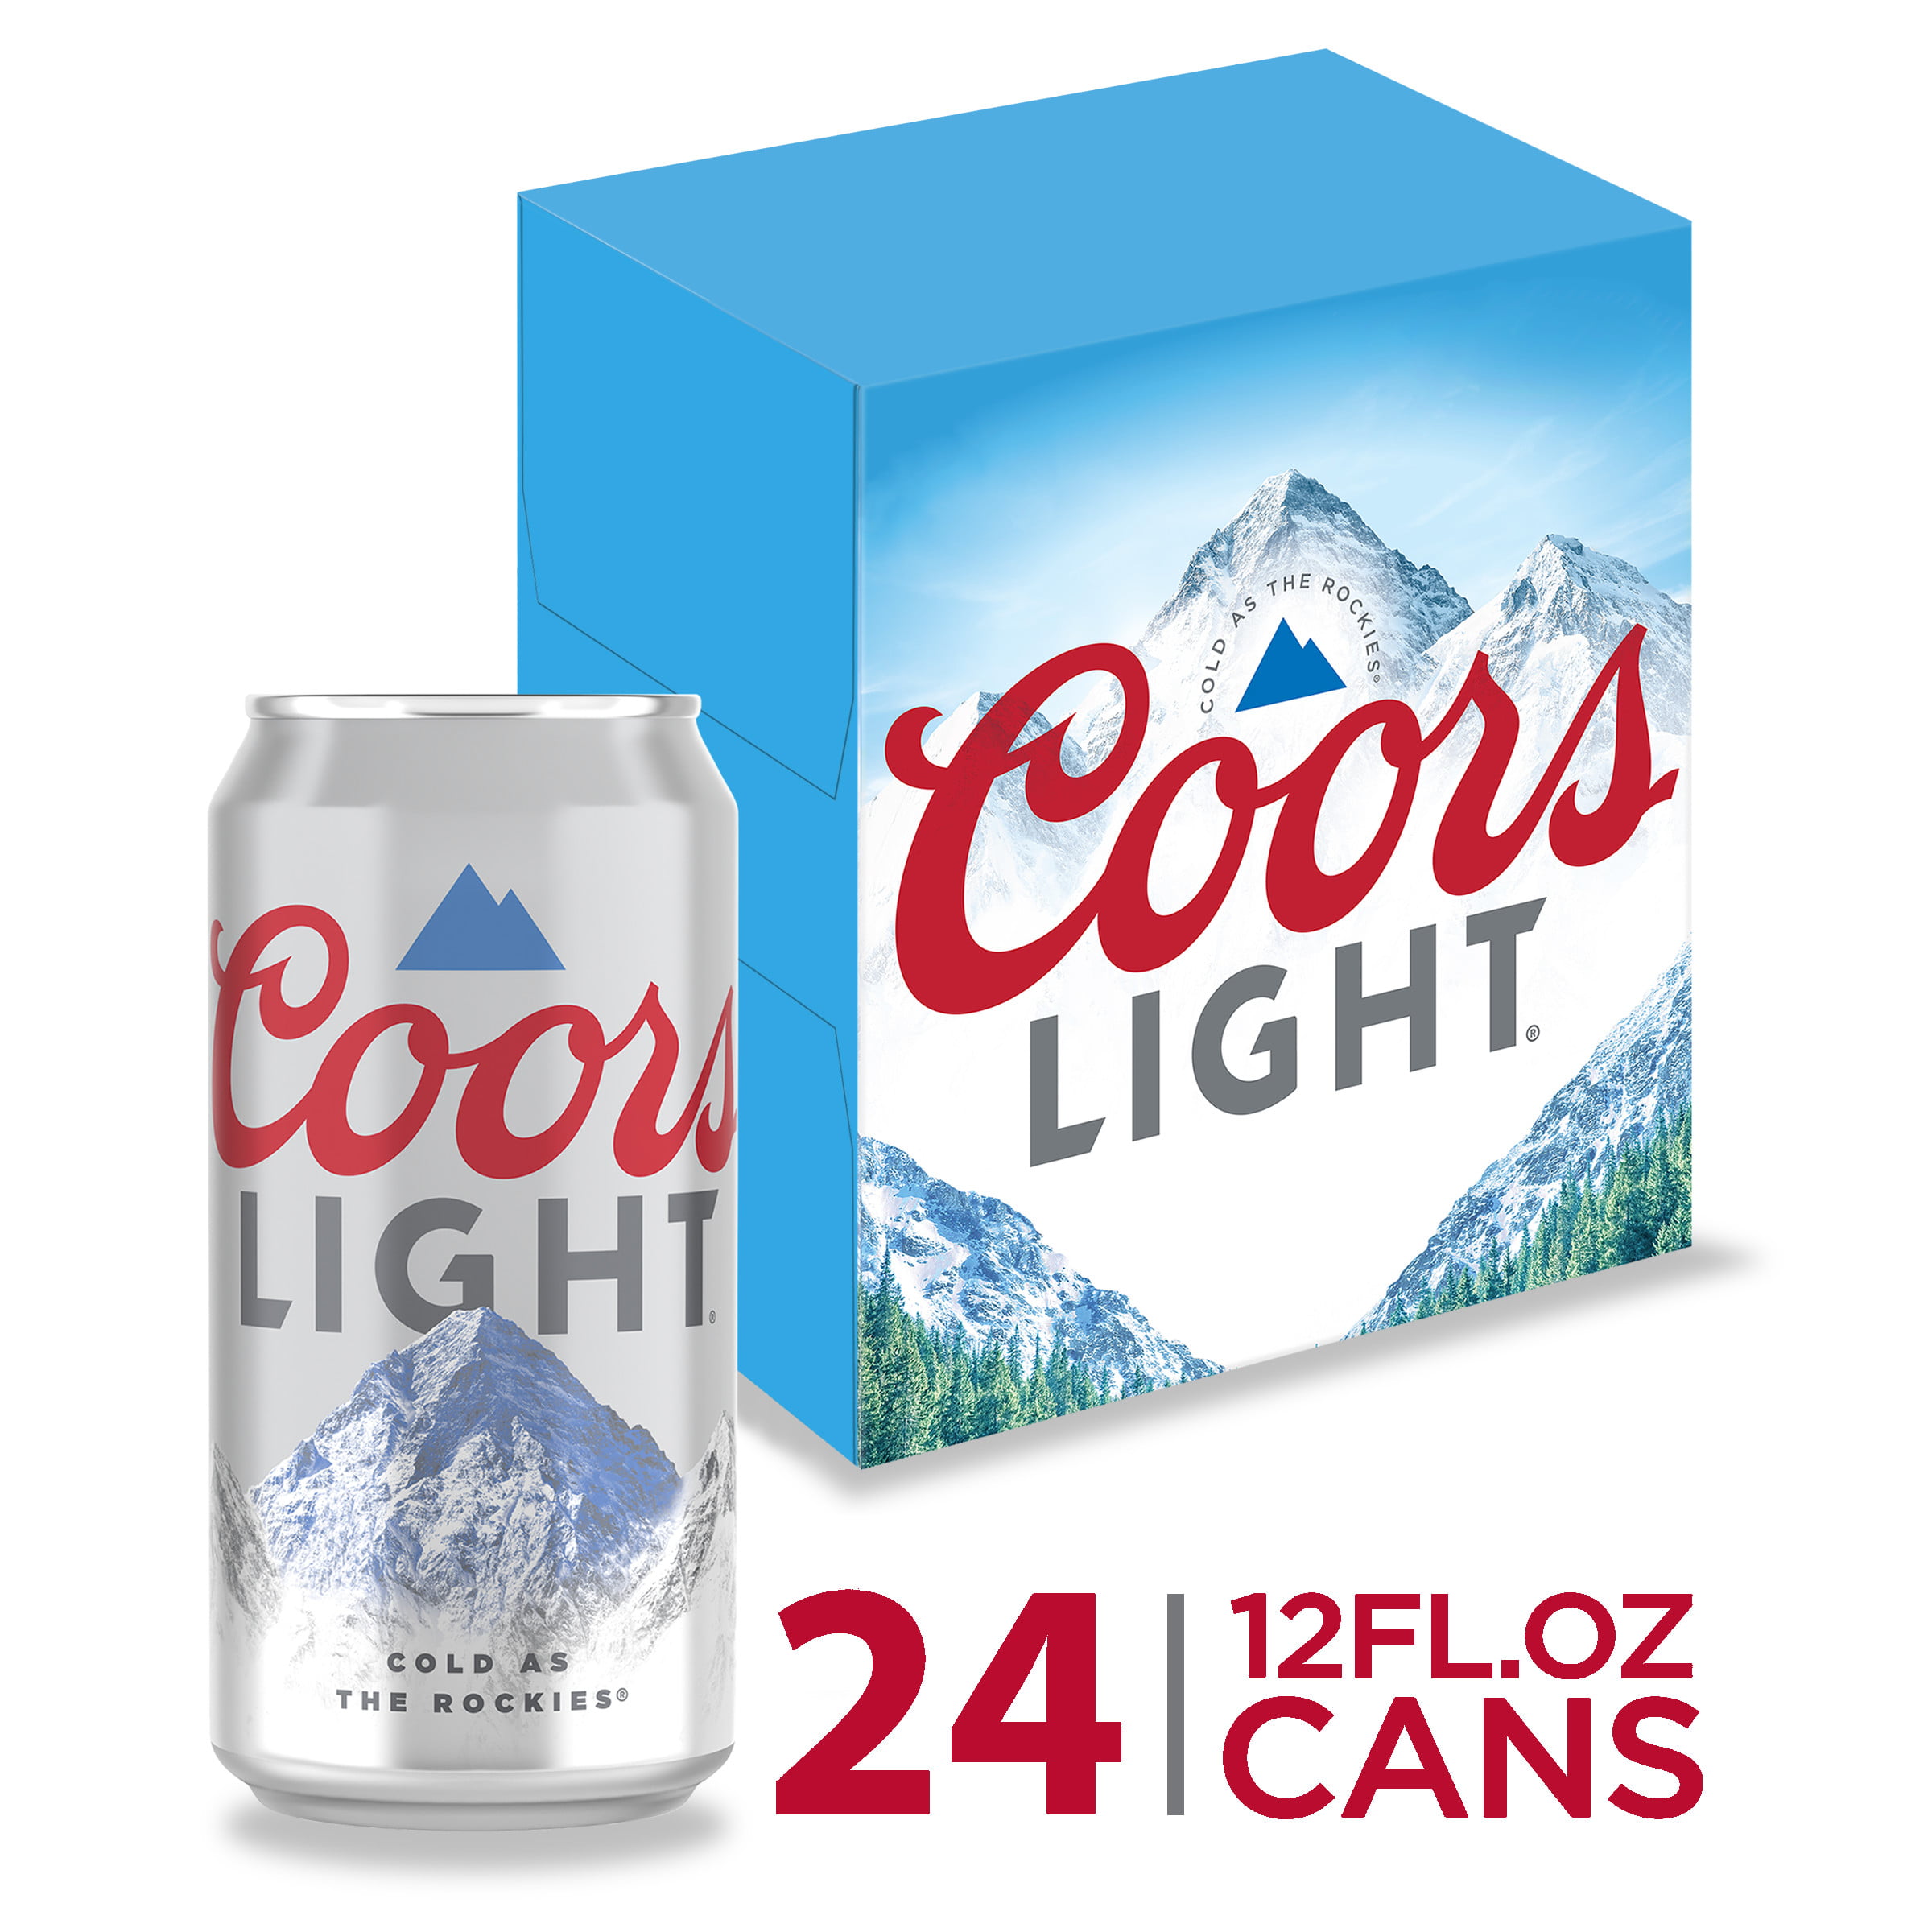 coors-light-beer-light-lager-beer-24-pack-beer-12-fl-oz-cans-4-2